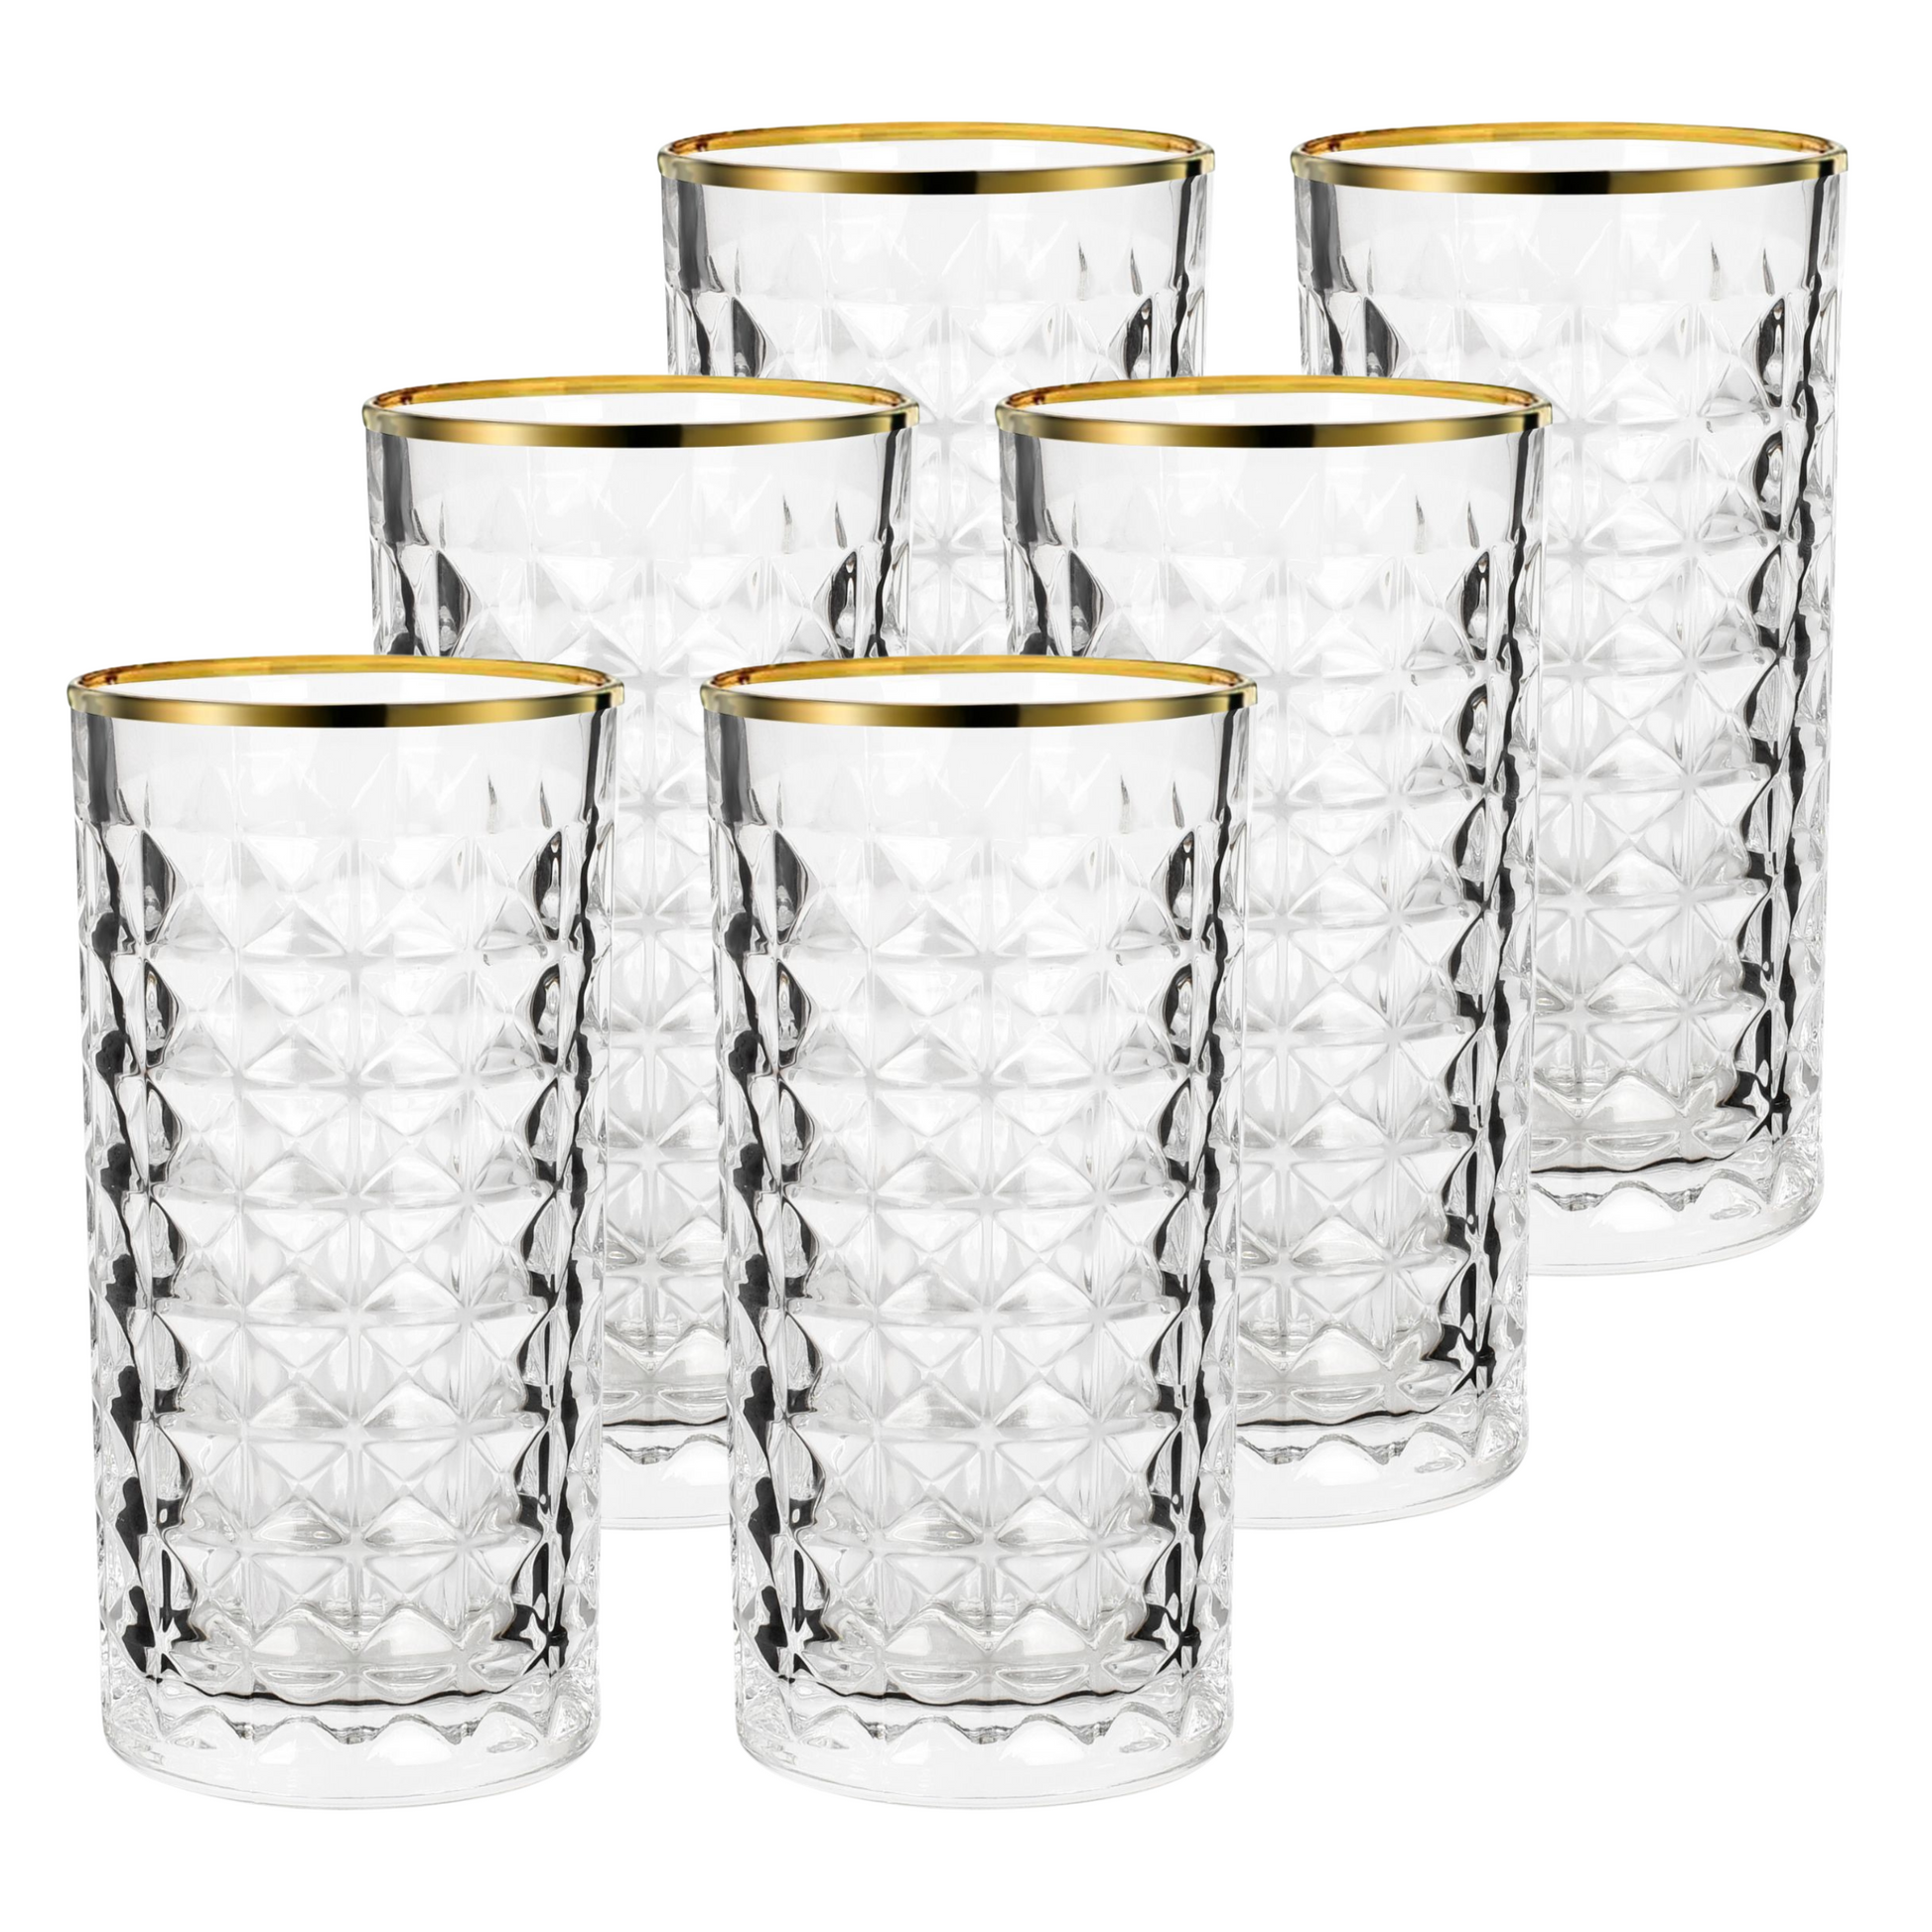 Schöne Kristall Latte Macchiato Gläser Goldrand Luxus Glas Set 6er Set Schönes Geschenk für Frauen